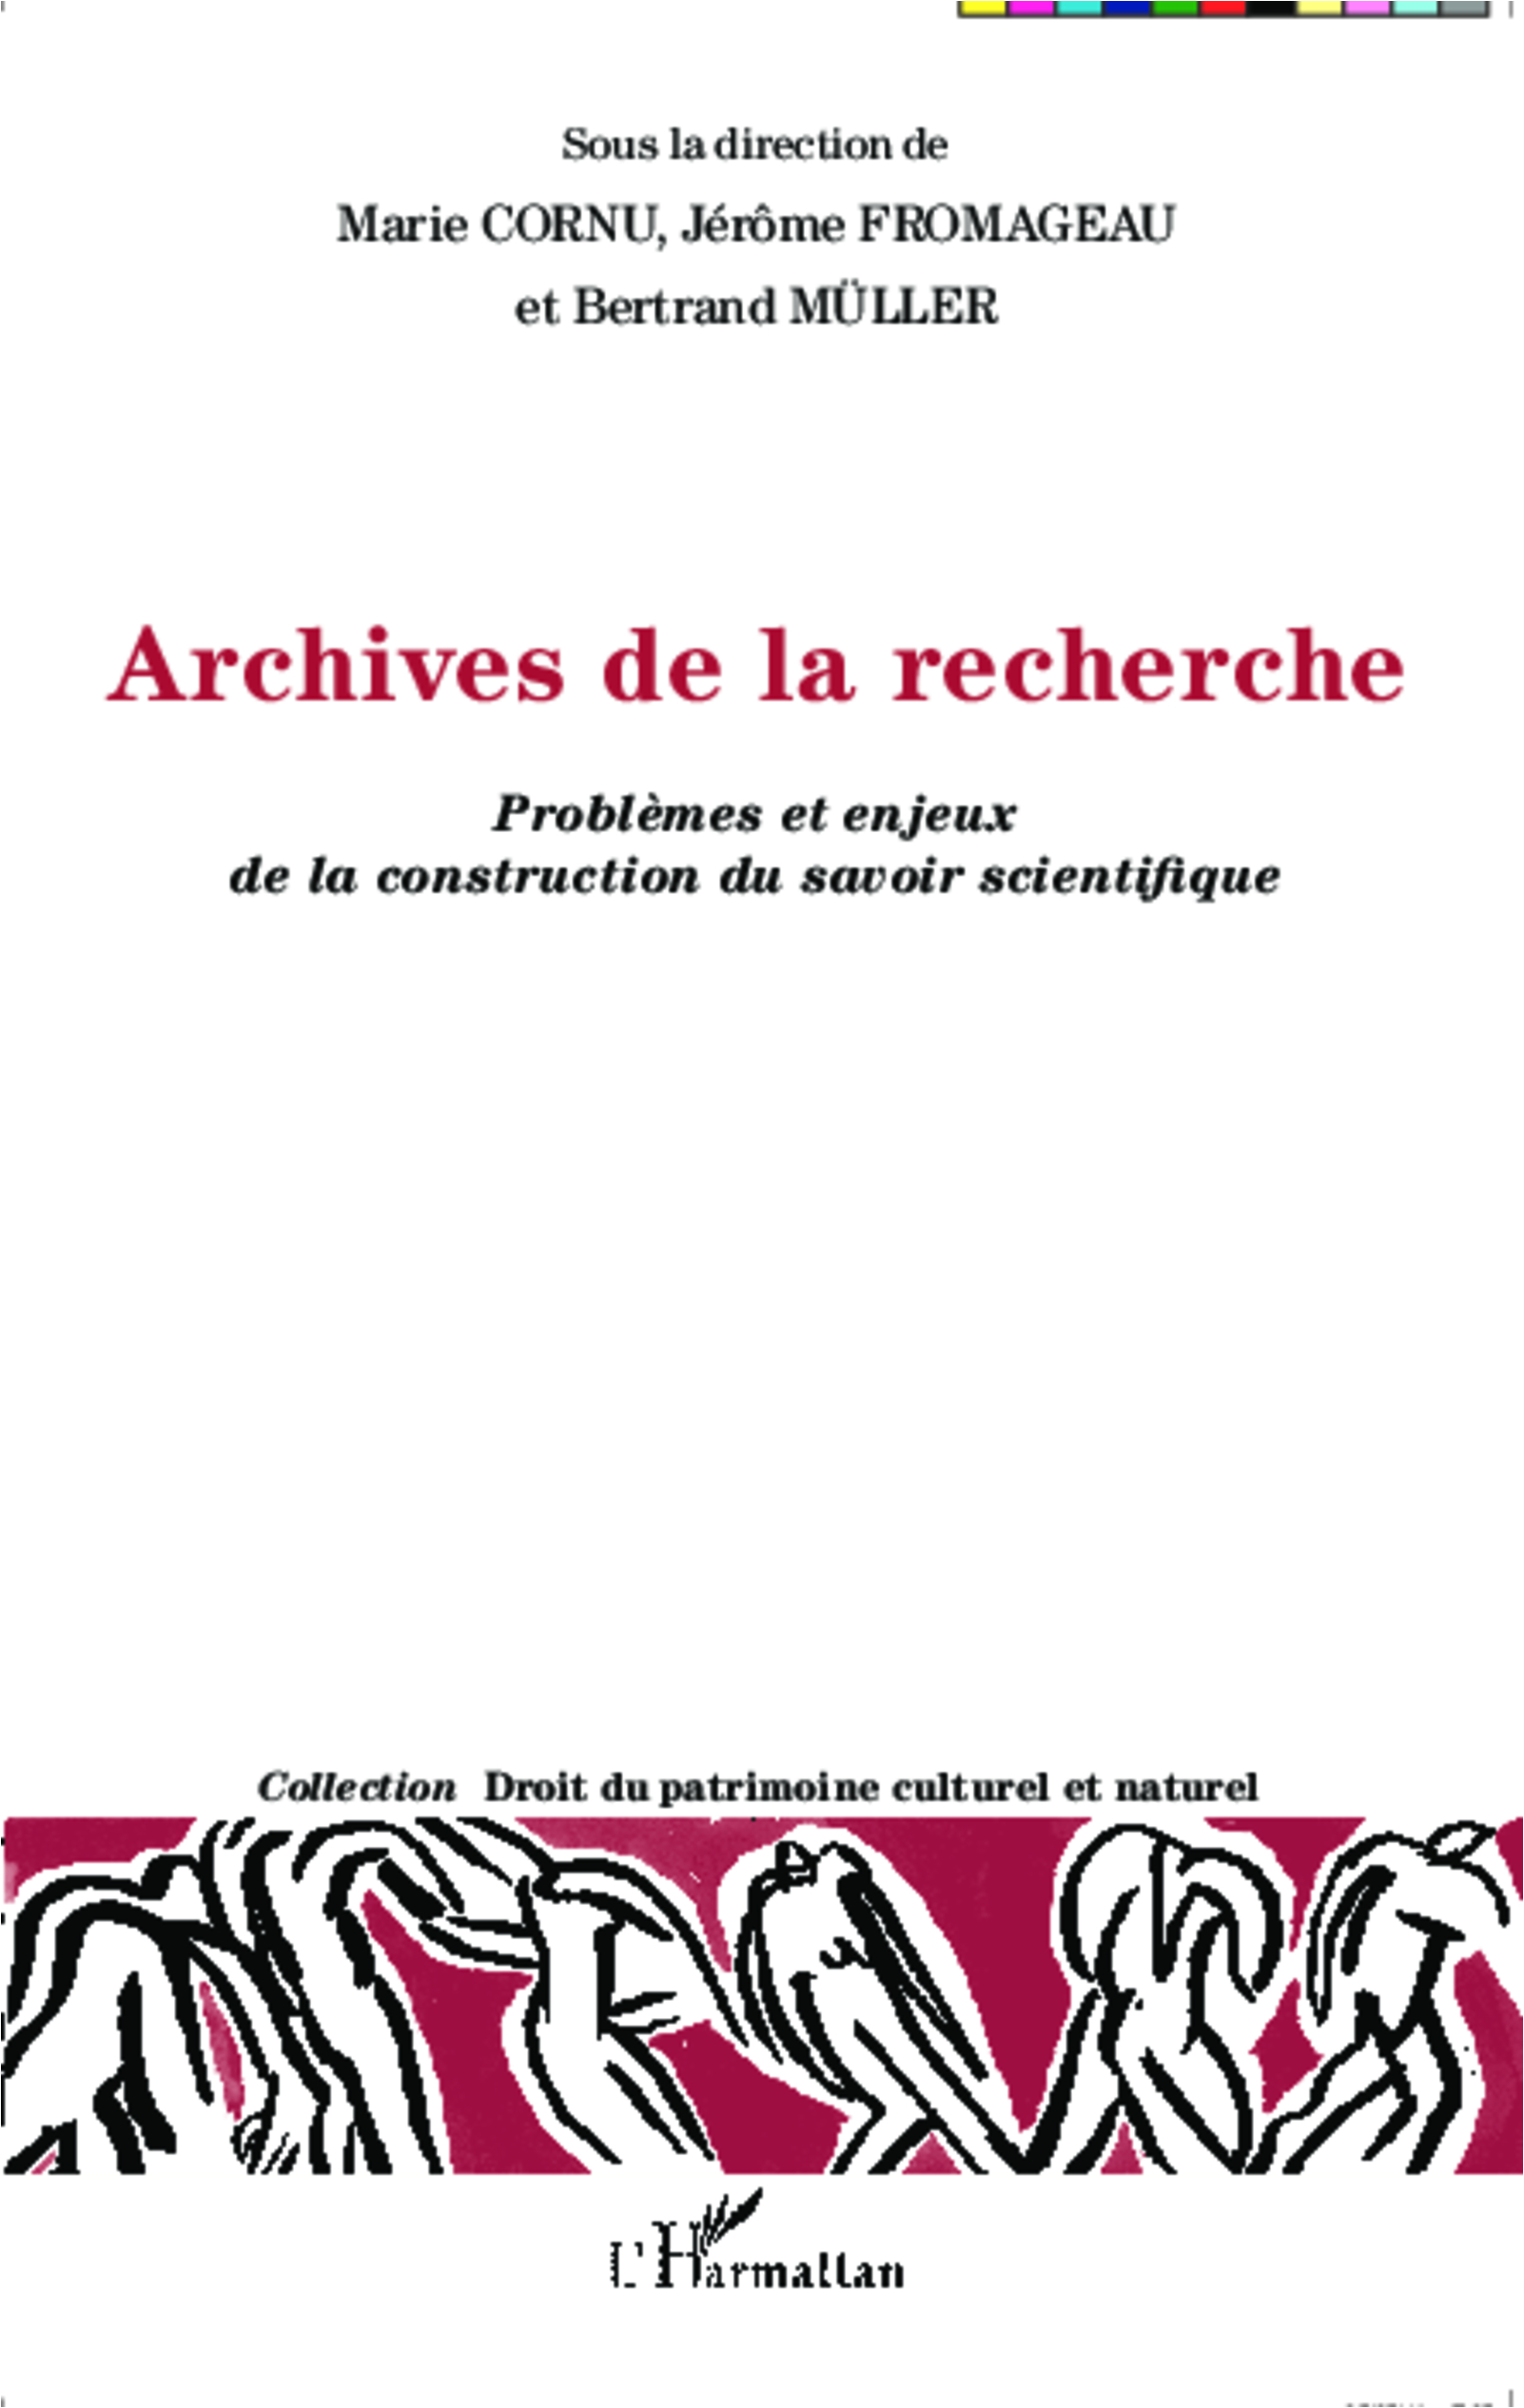 Archives de la recherche. Problèmes et enjeux de la construction du savoir scientifique, 2014, 208 p.